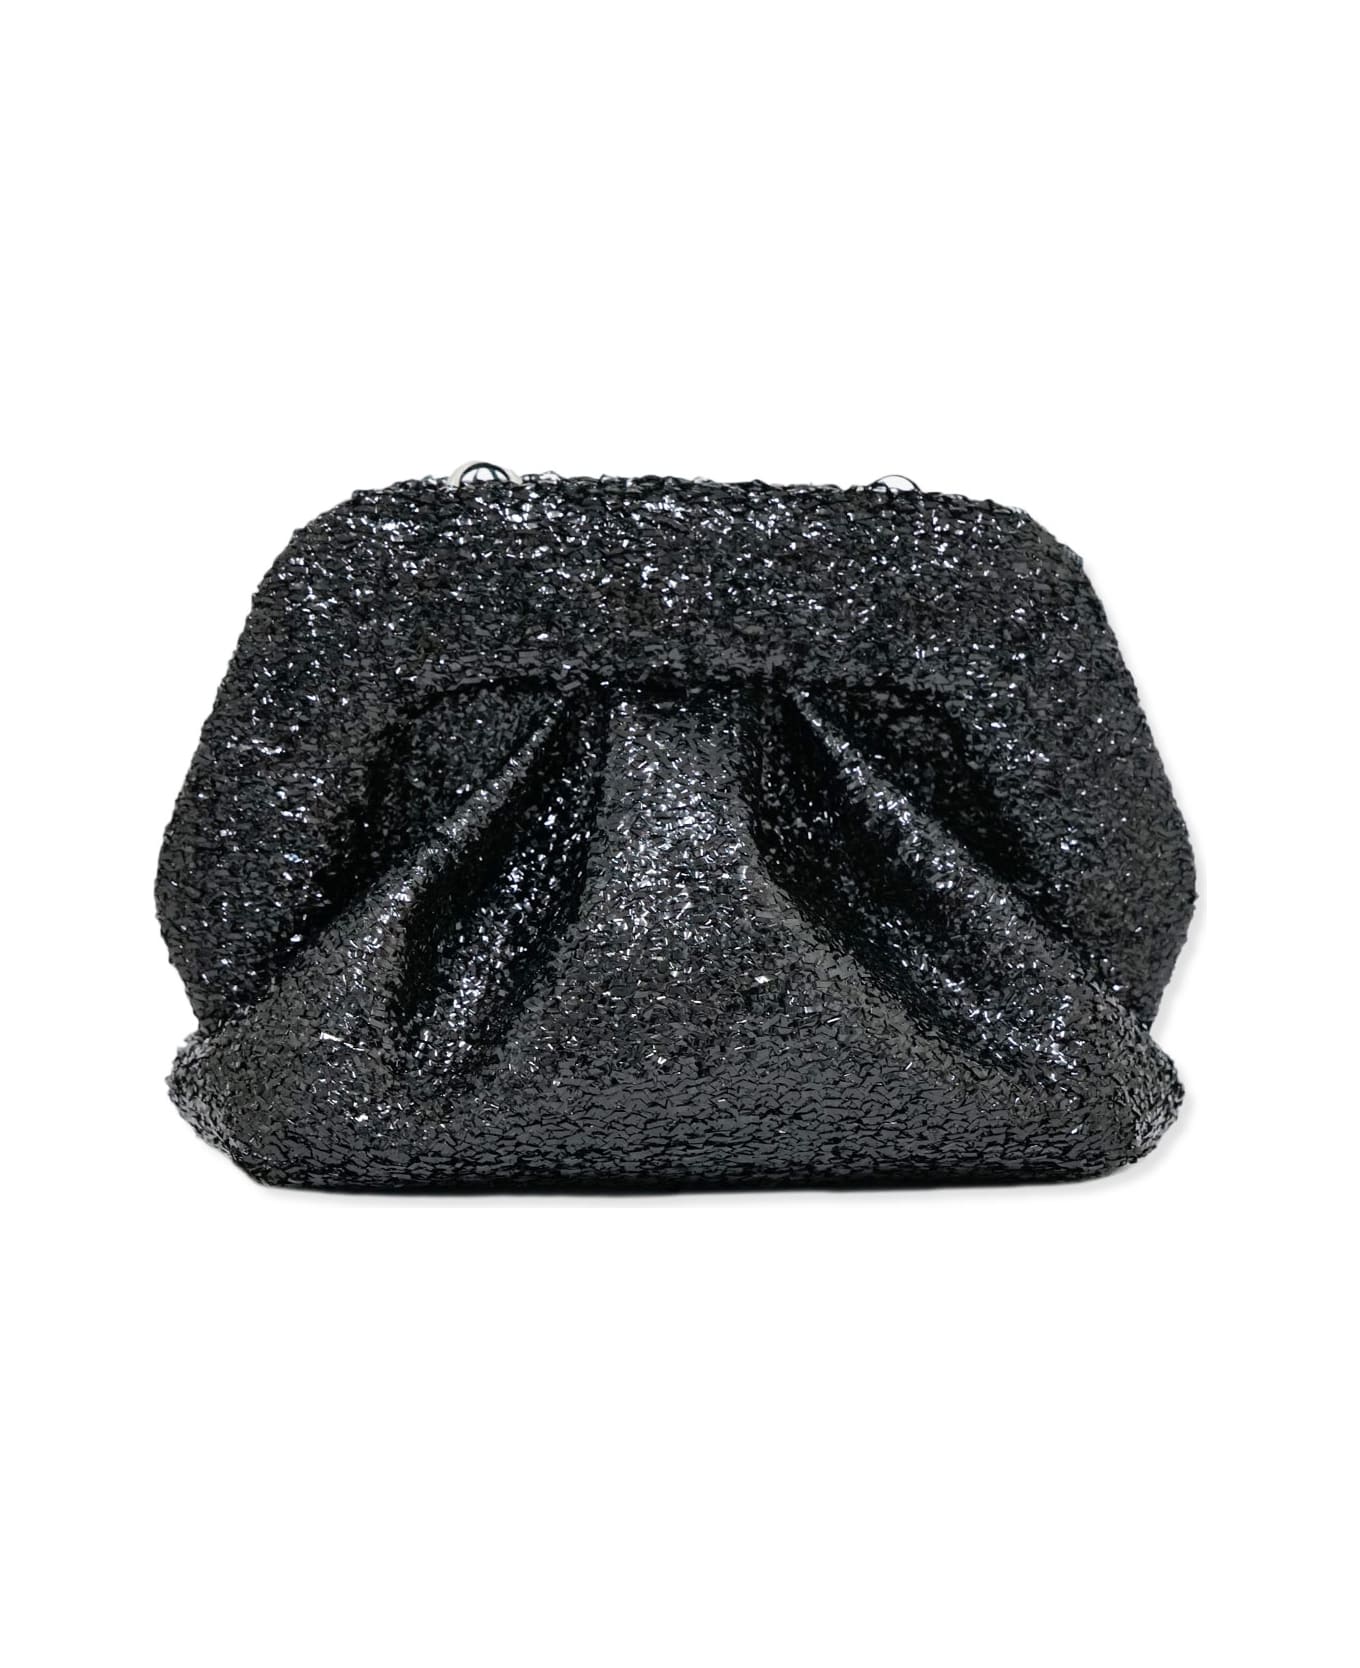 THEMOIRè Handbag THEMOIRè - BLACK